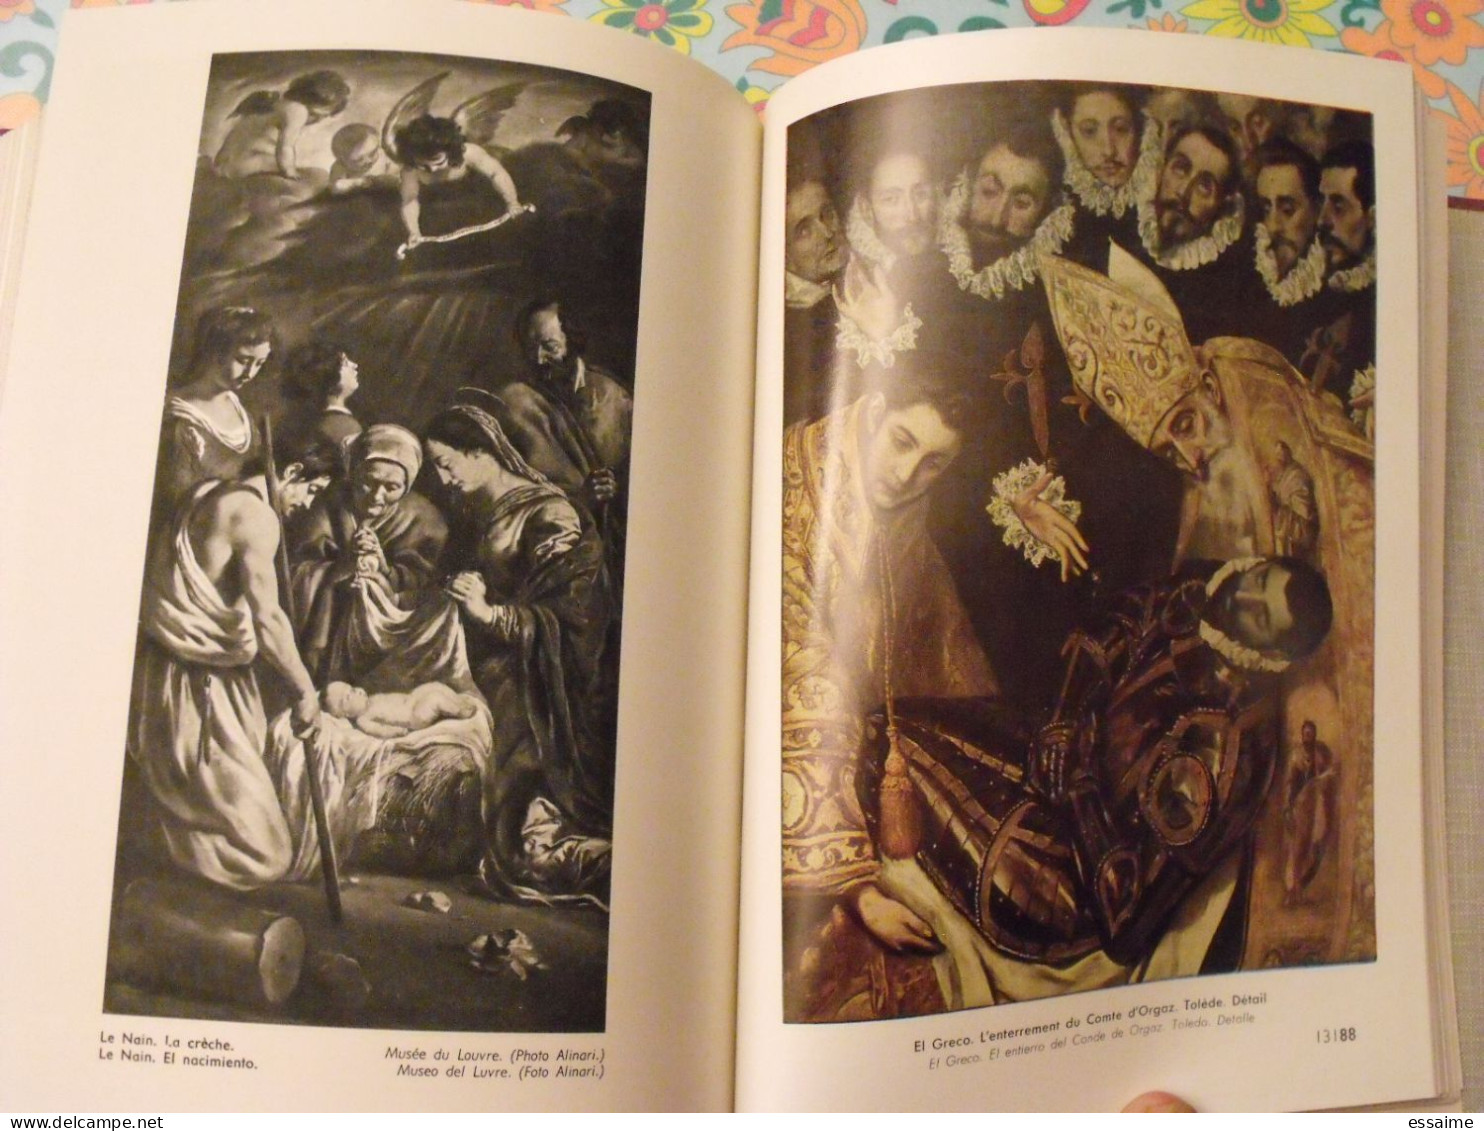 encyclopédie Clartés. Beaux-arts en 2 tomes. 1976. très illustré